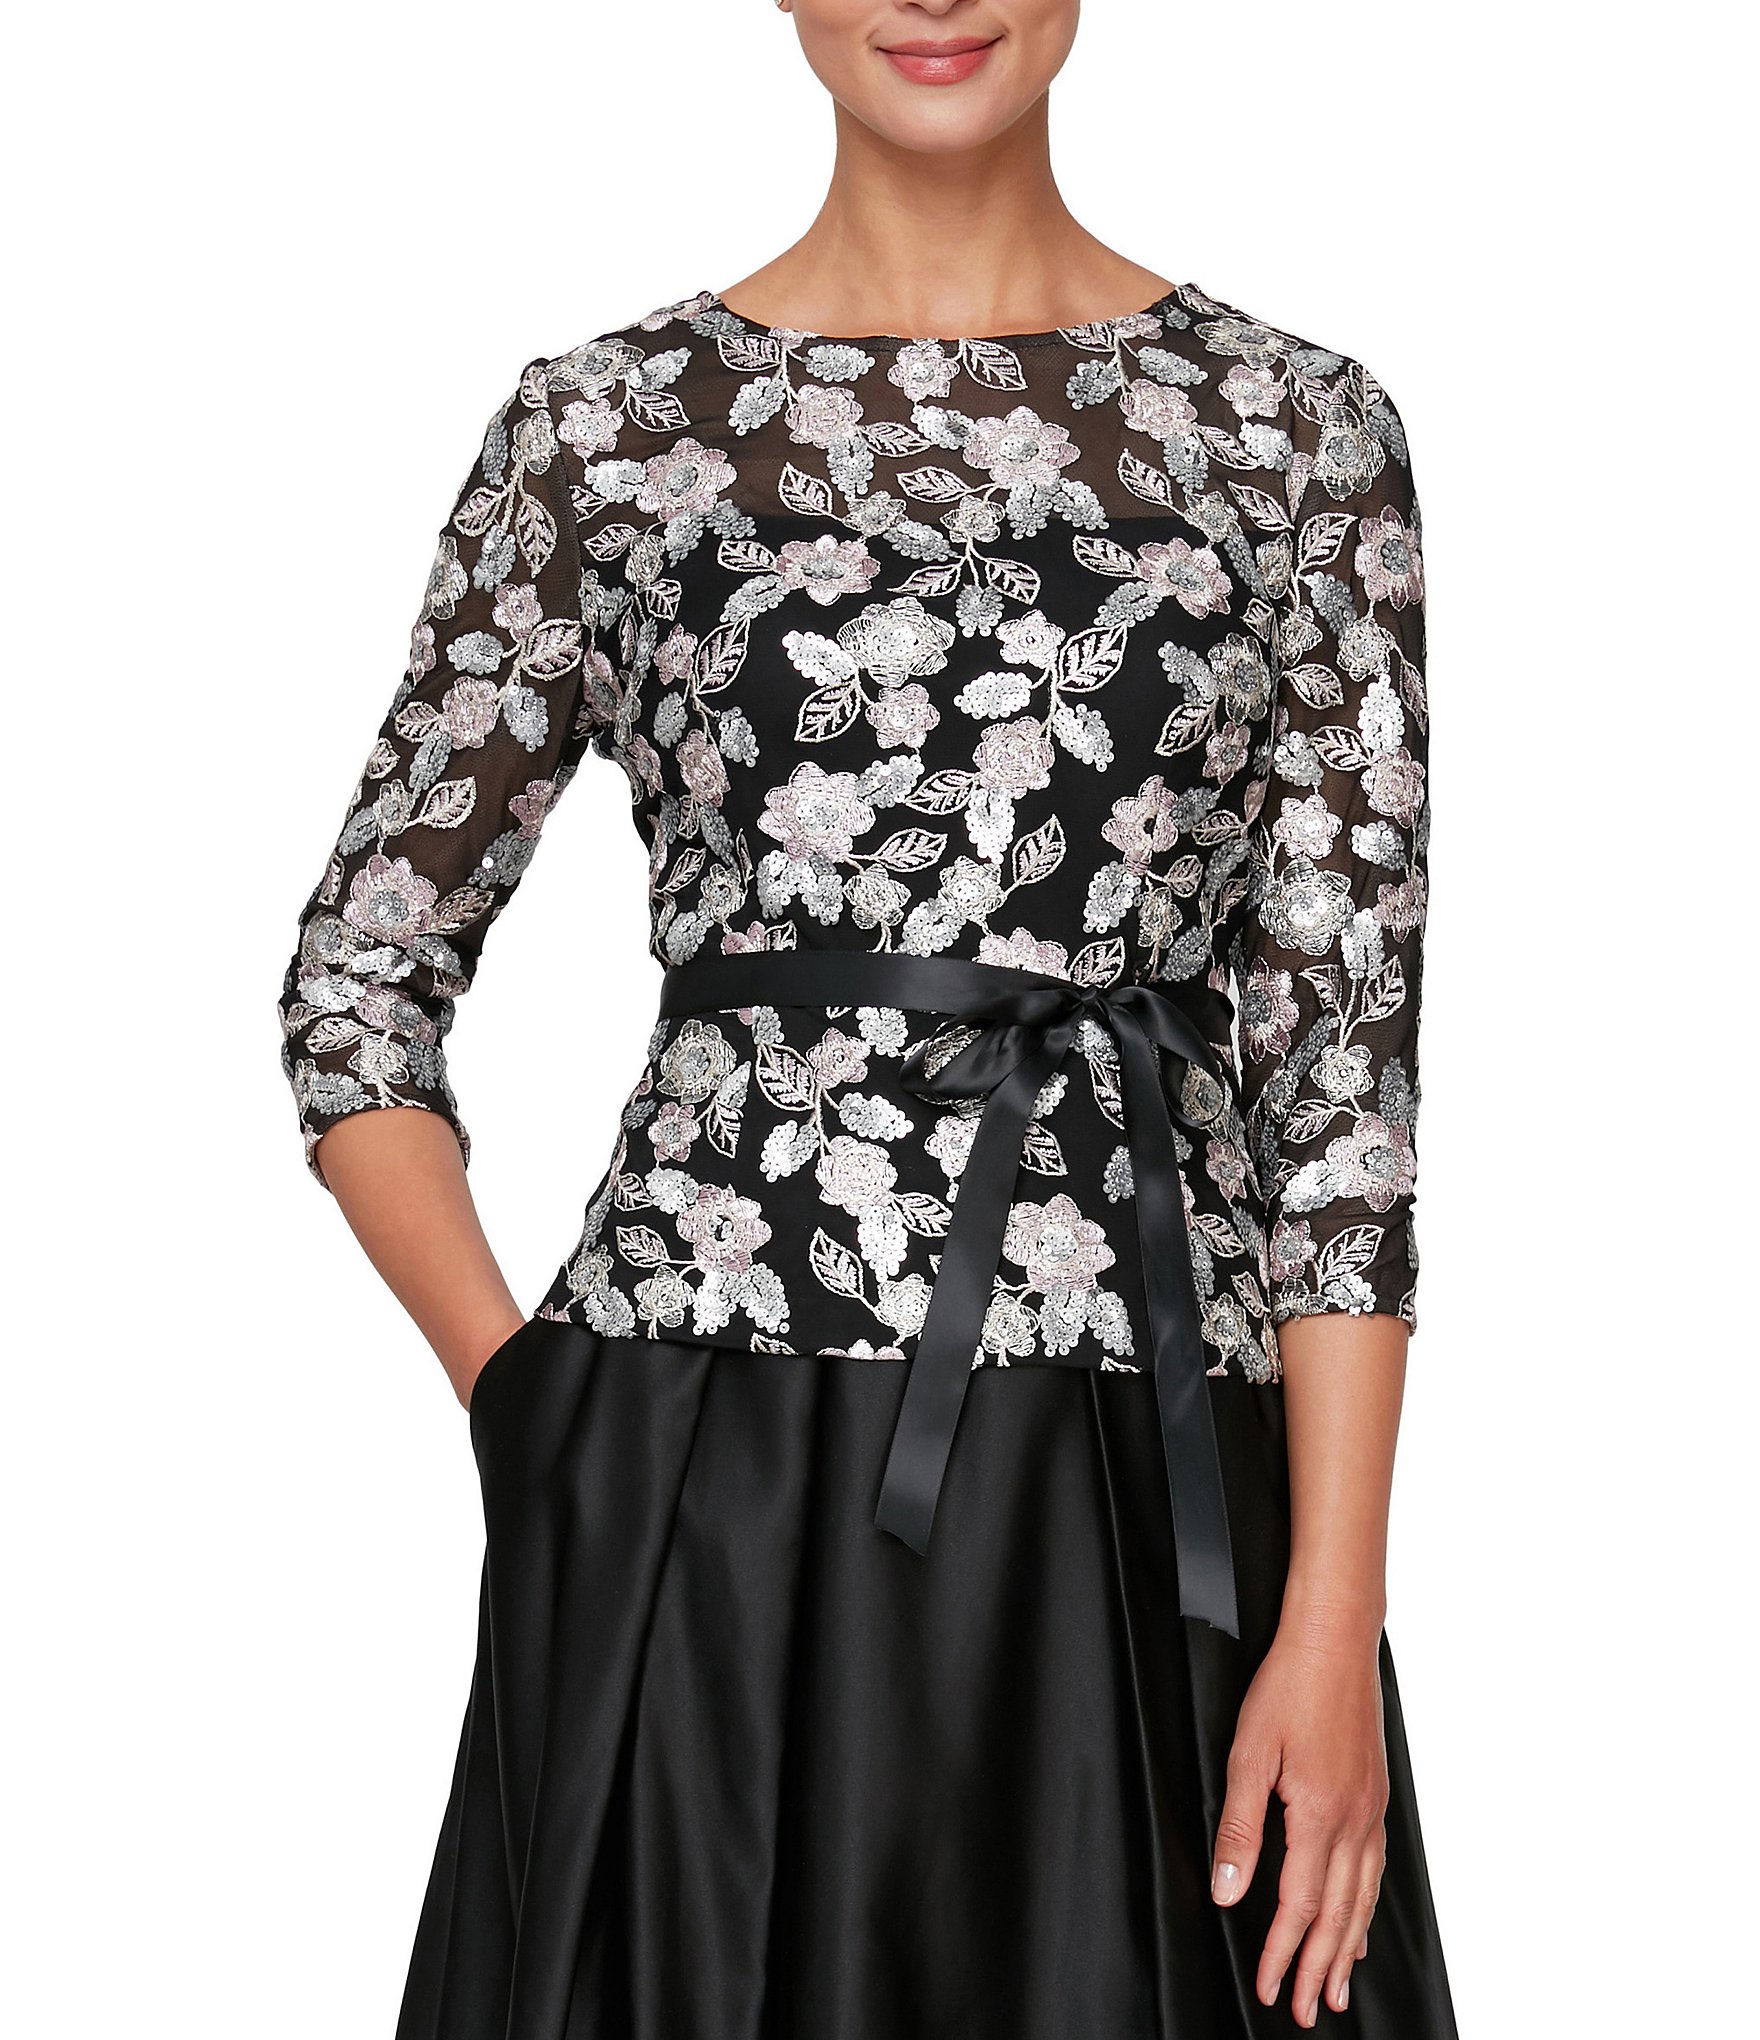 Women's Formal ☀ Dressy Tops | Dillard's